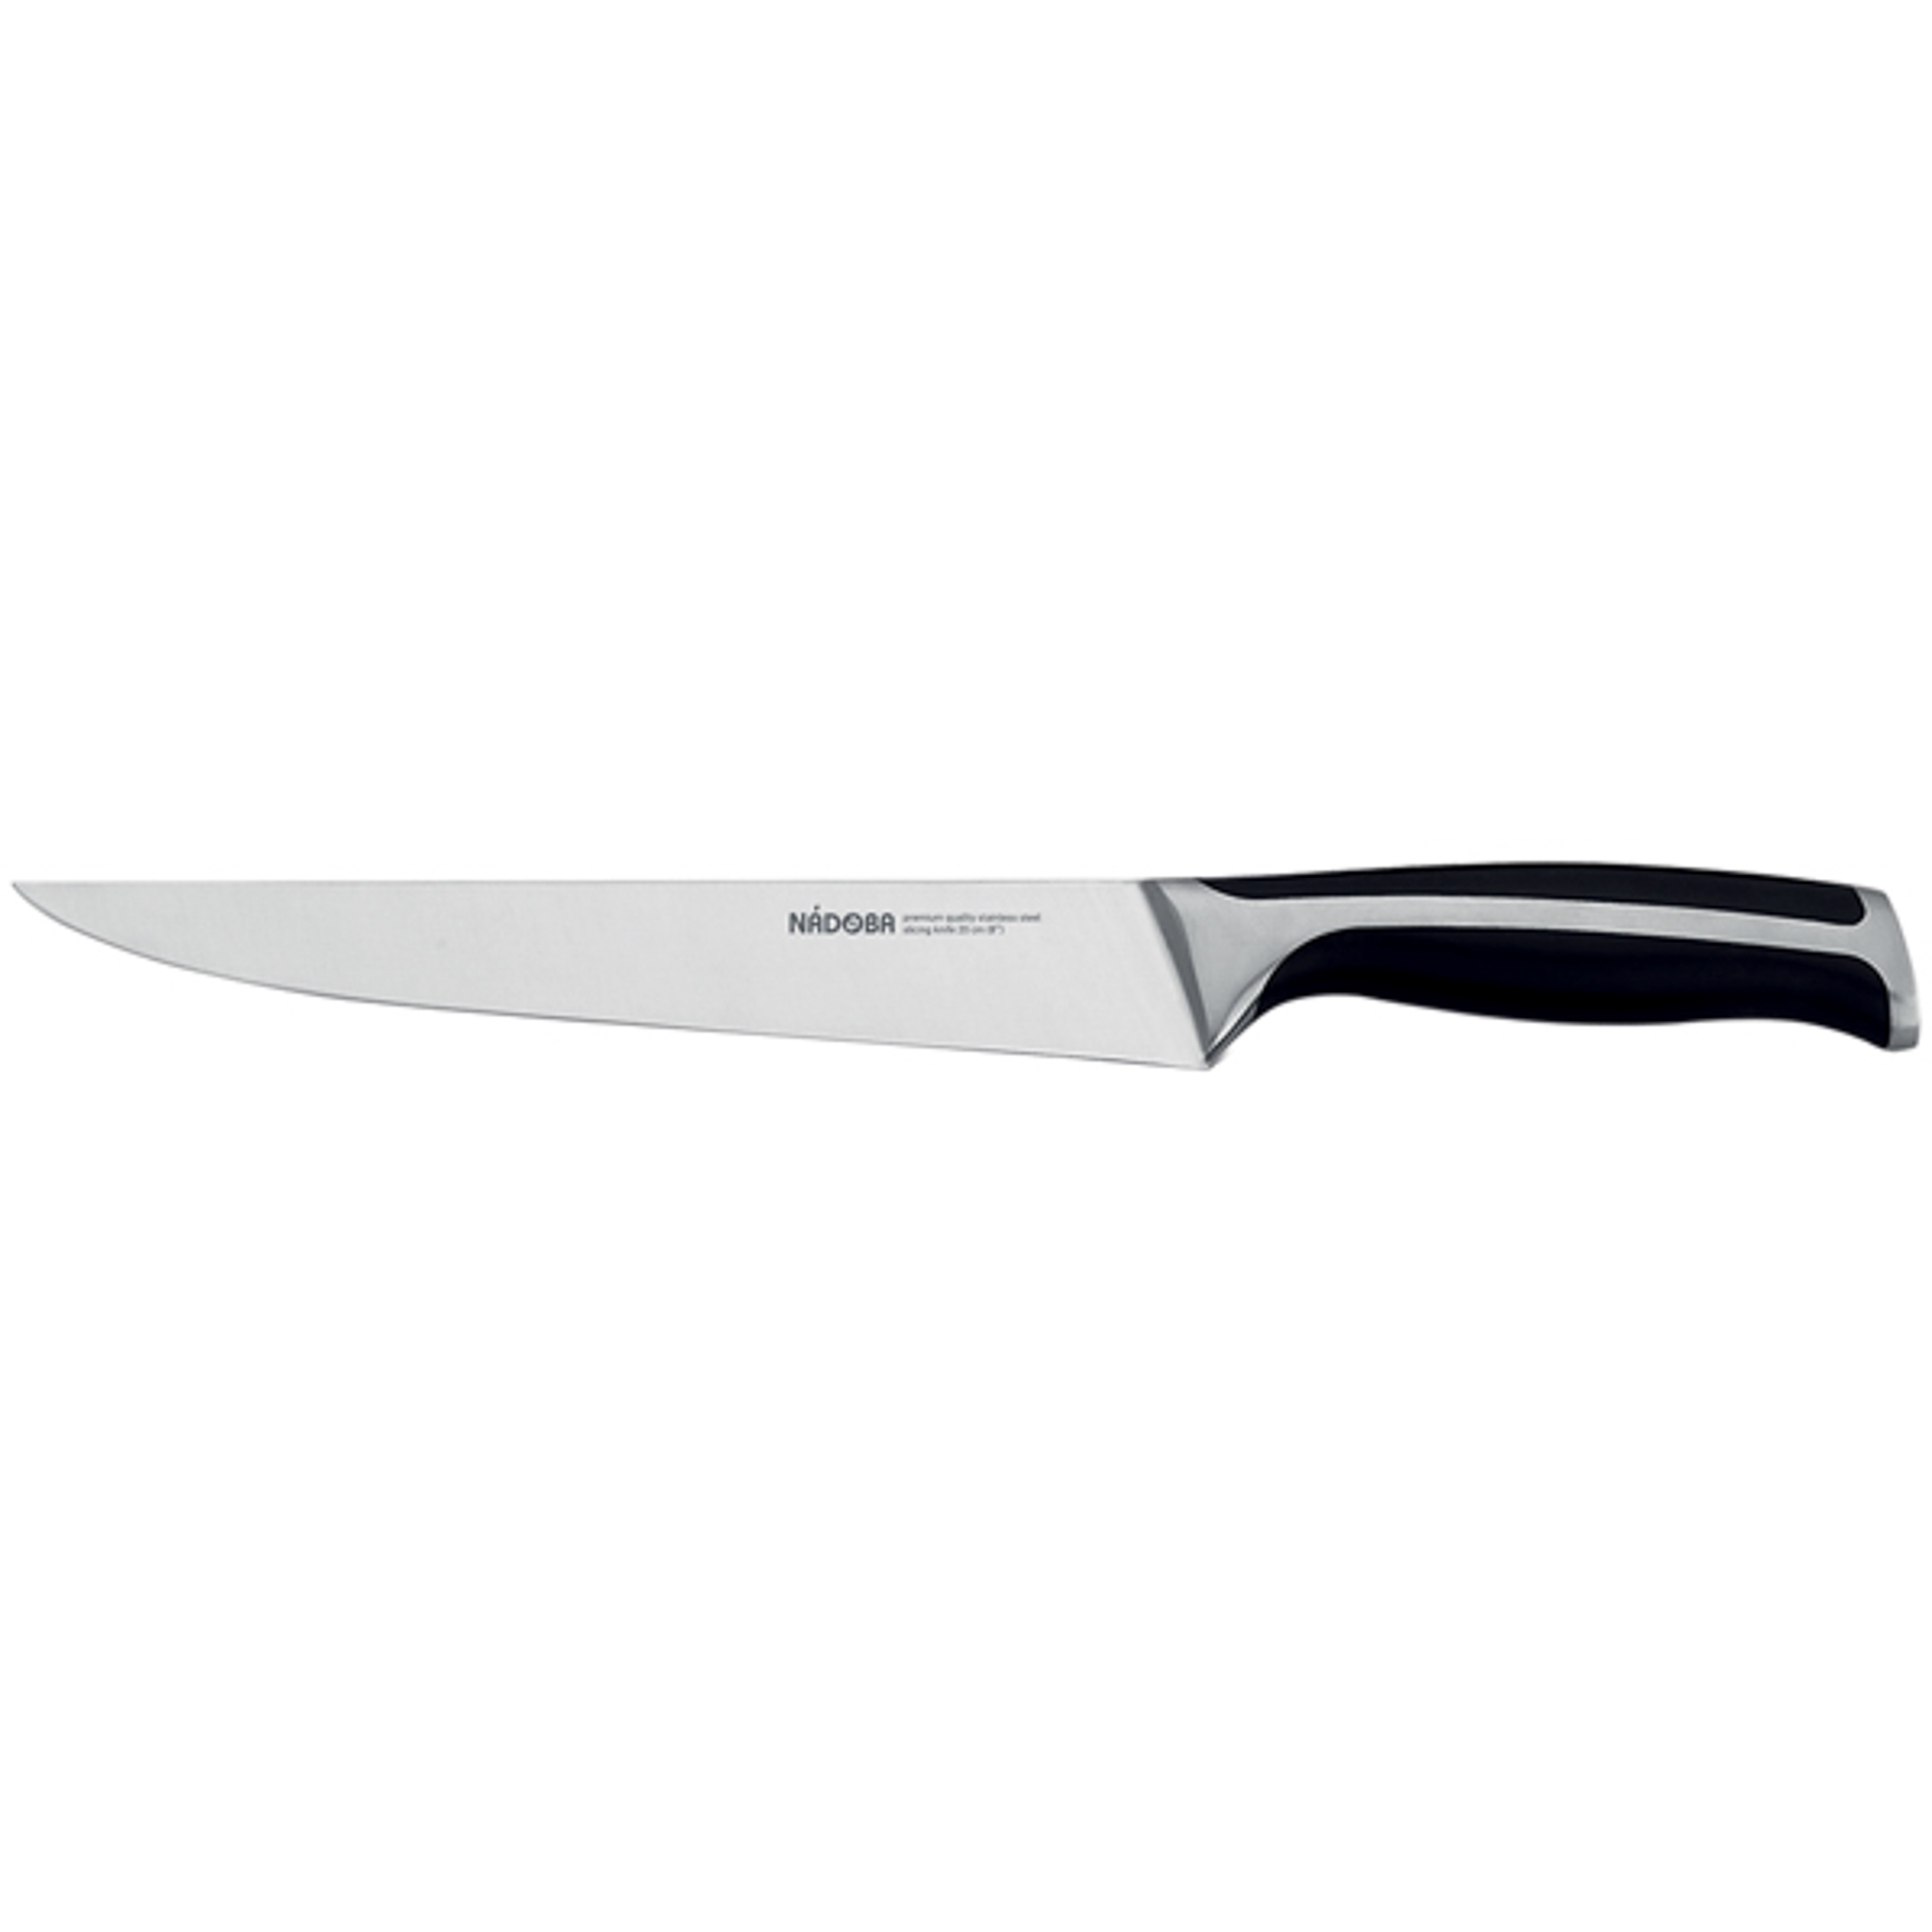 Нож разделочный 20 см Nadoba ursa нож разделочный skk platinum 20 см блистер